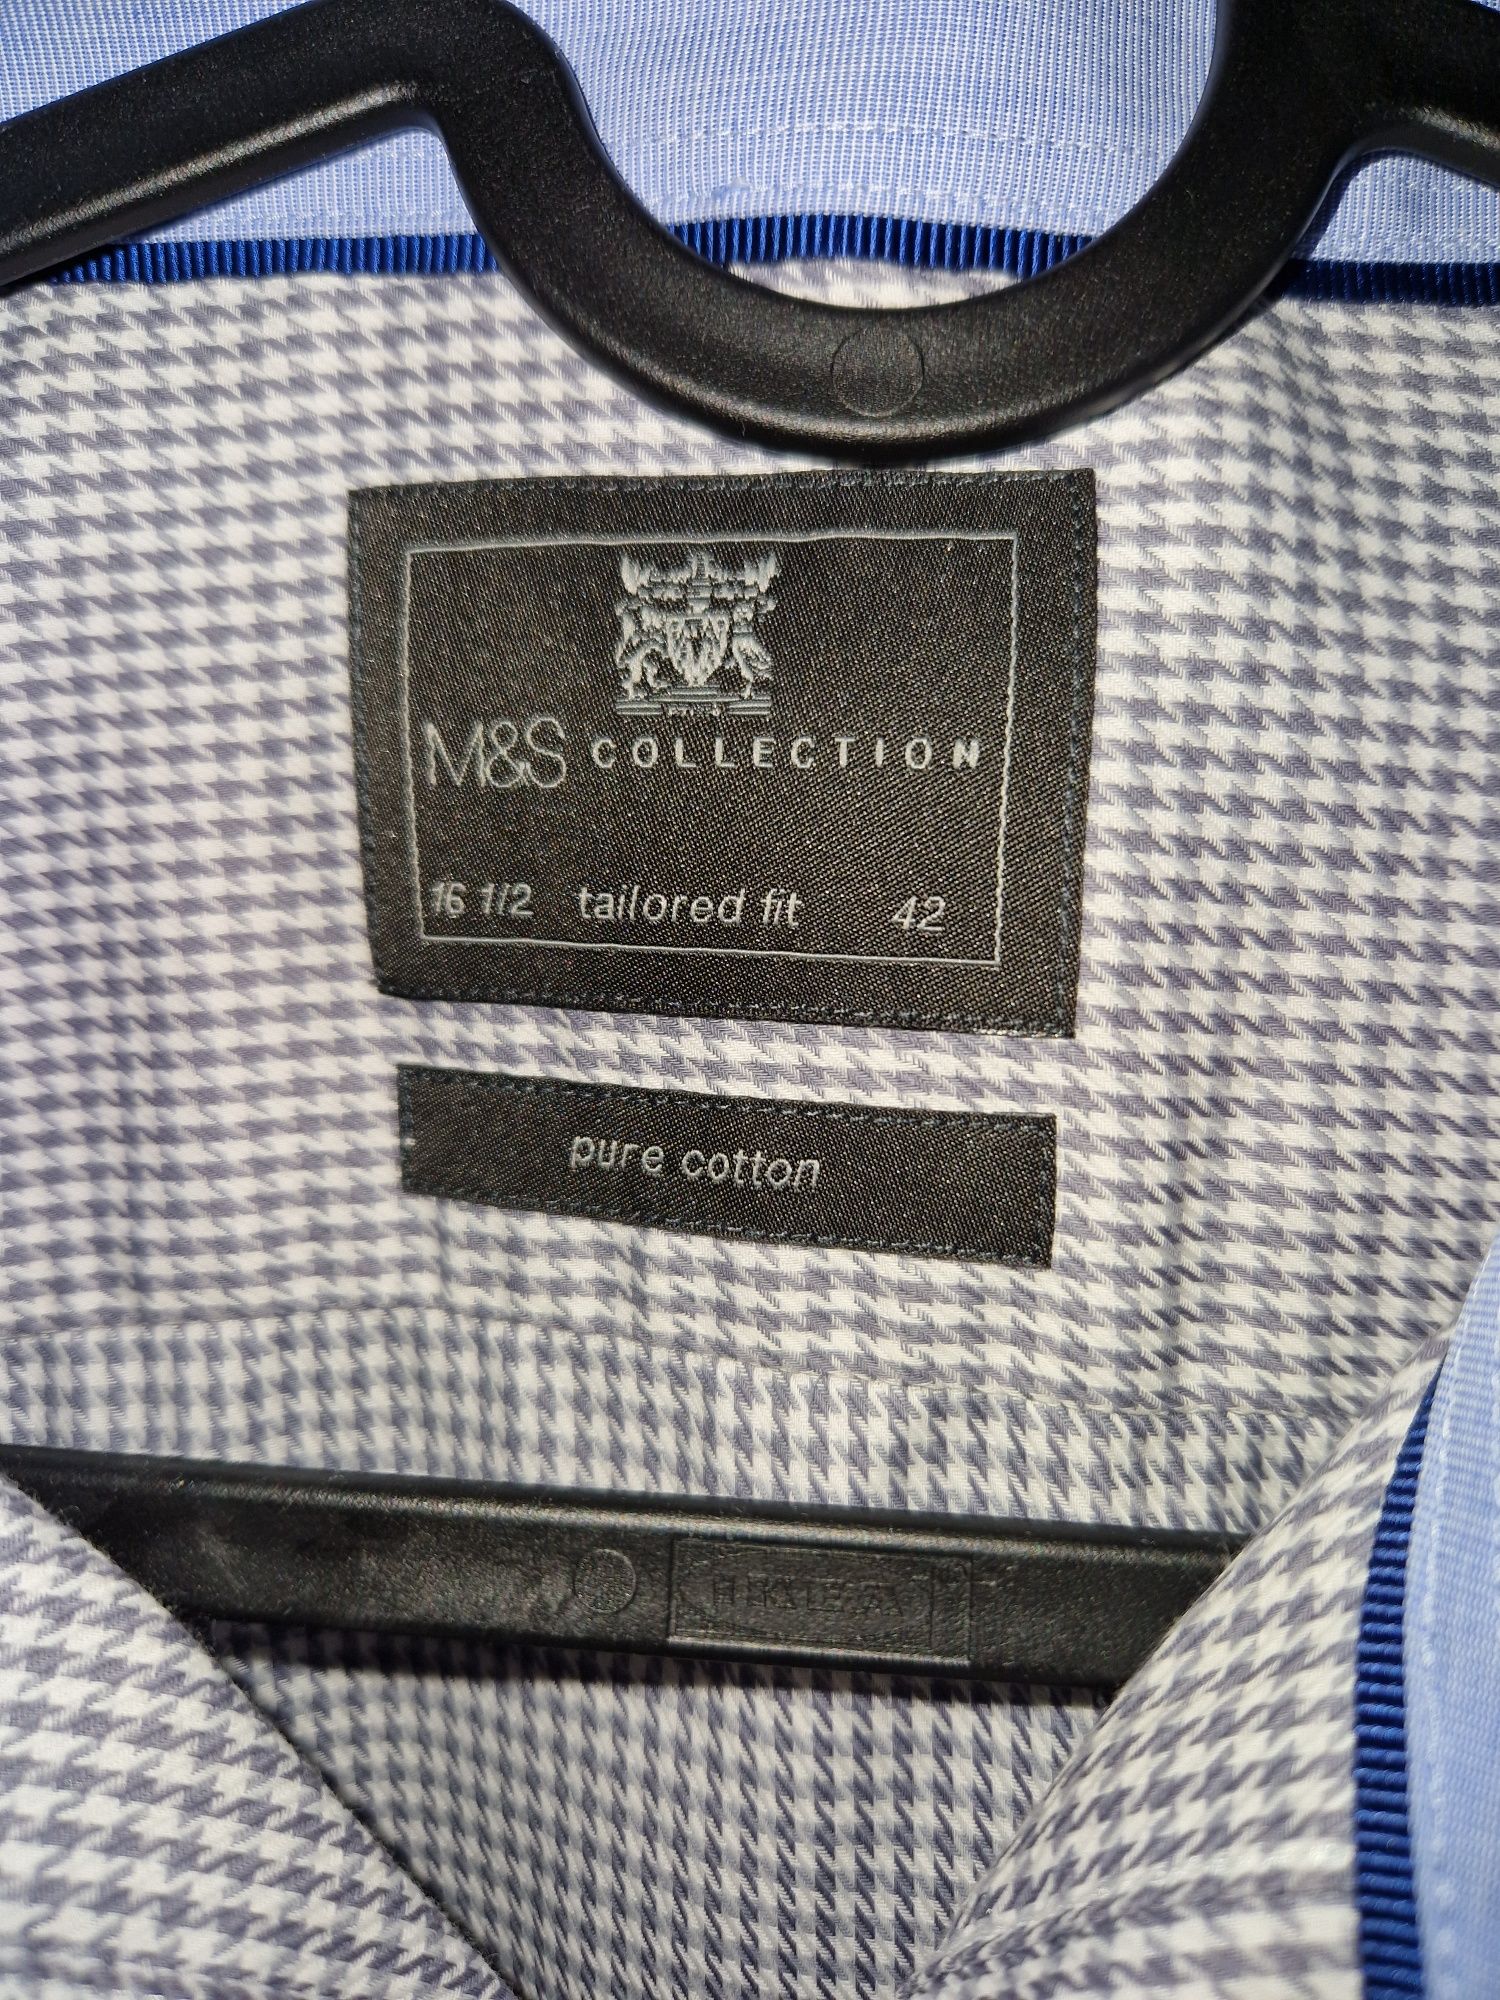 Koszula męska Marks & Spencer r.42 tailored fit